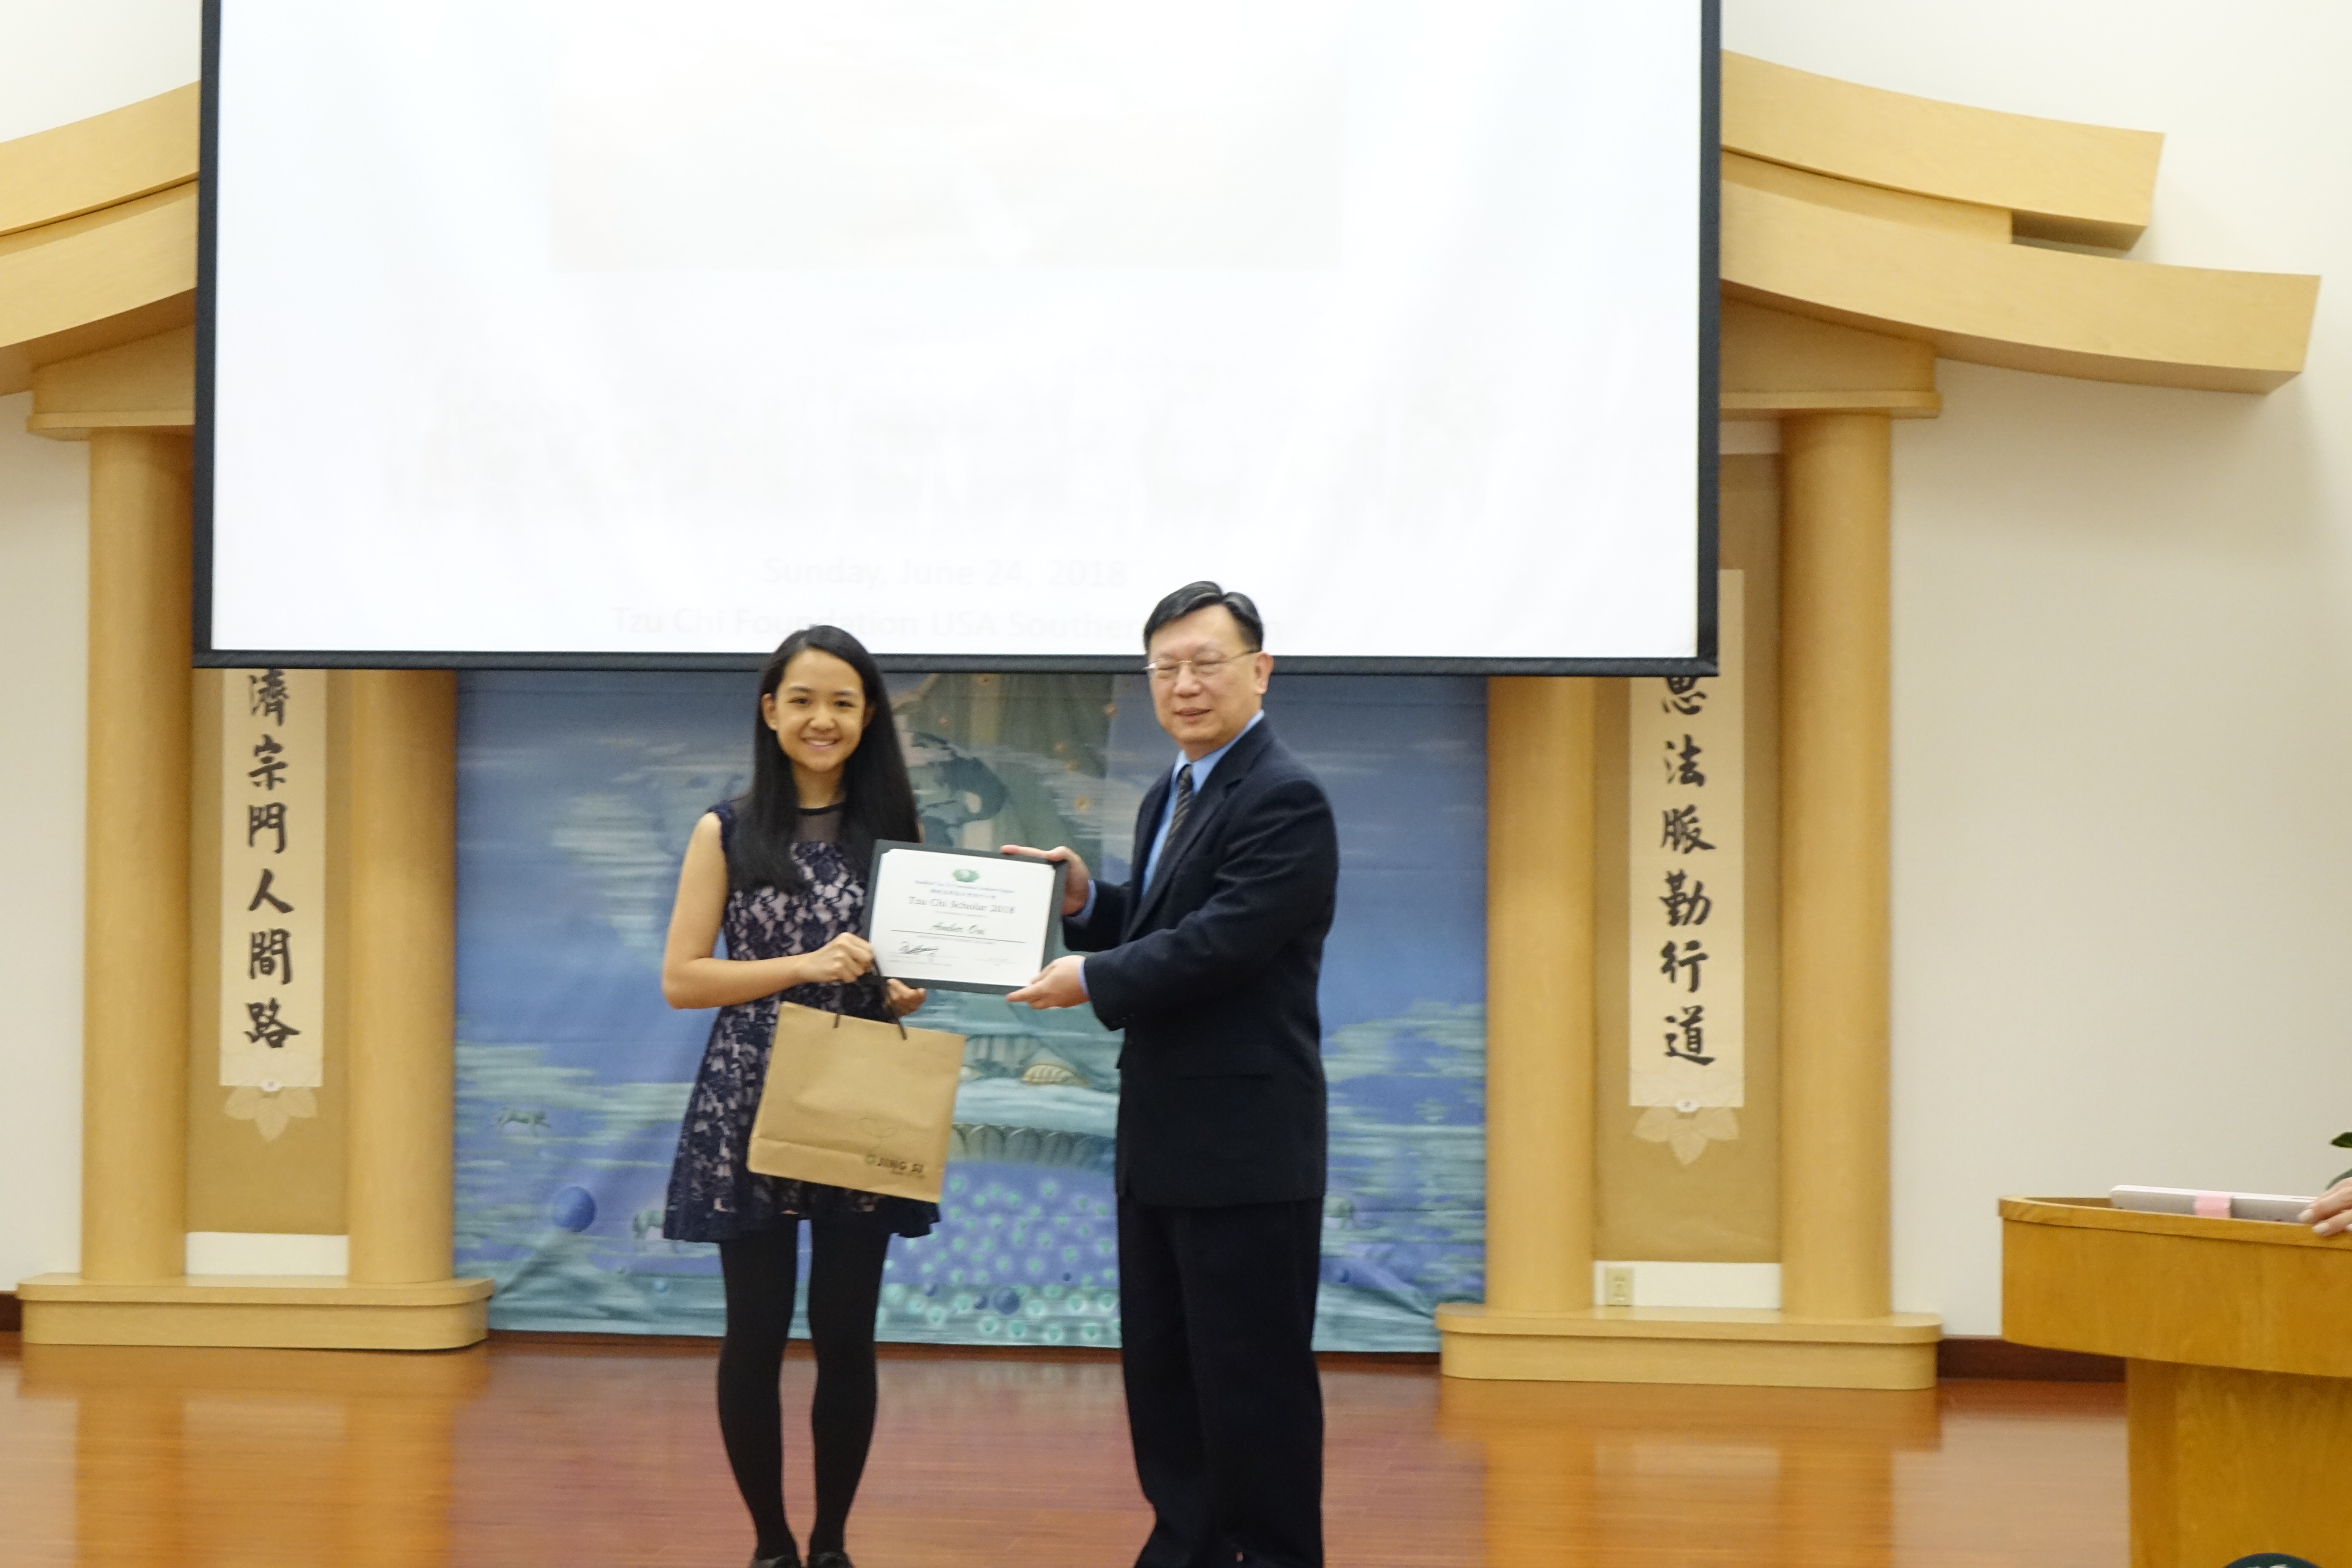 慈濟德州分會於6月24日下午2點，舉辦2018年度清寒獎學金頒獎典禮，副執行長王崑賢頒發獎狀給得獎學生 Amber Ooi。